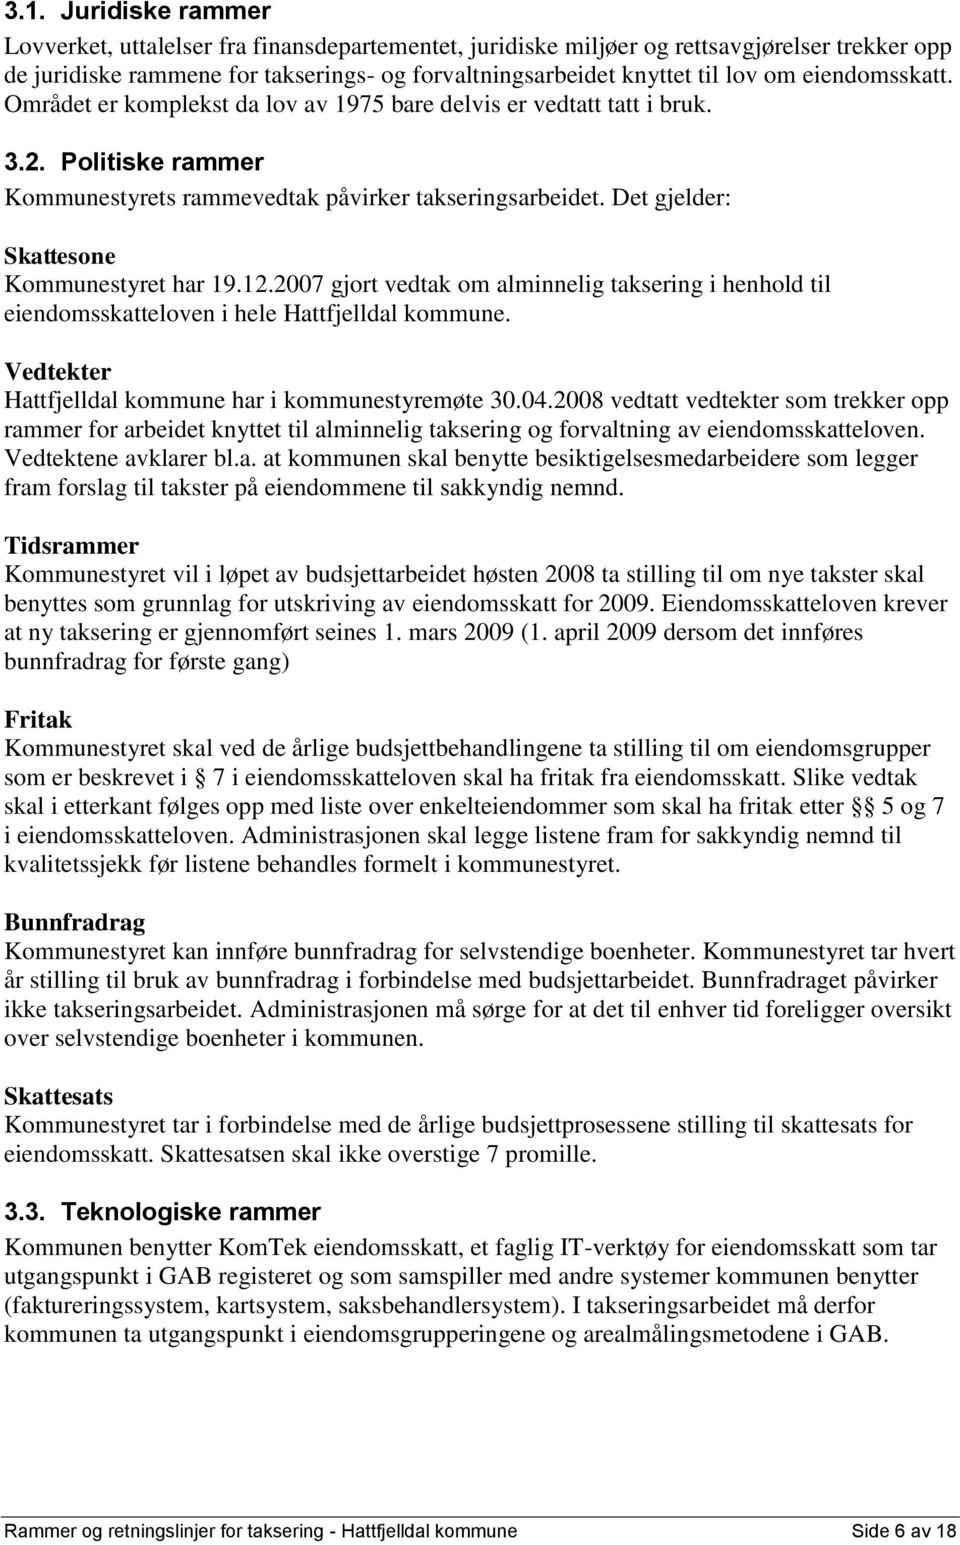 Det gjelder: Skattesone Kommunestyret har 19.12.2007 gjort vedtak om alminnelig taksering i henhold til eiendomsskatteloven i hele Hattfjelldal kommune.